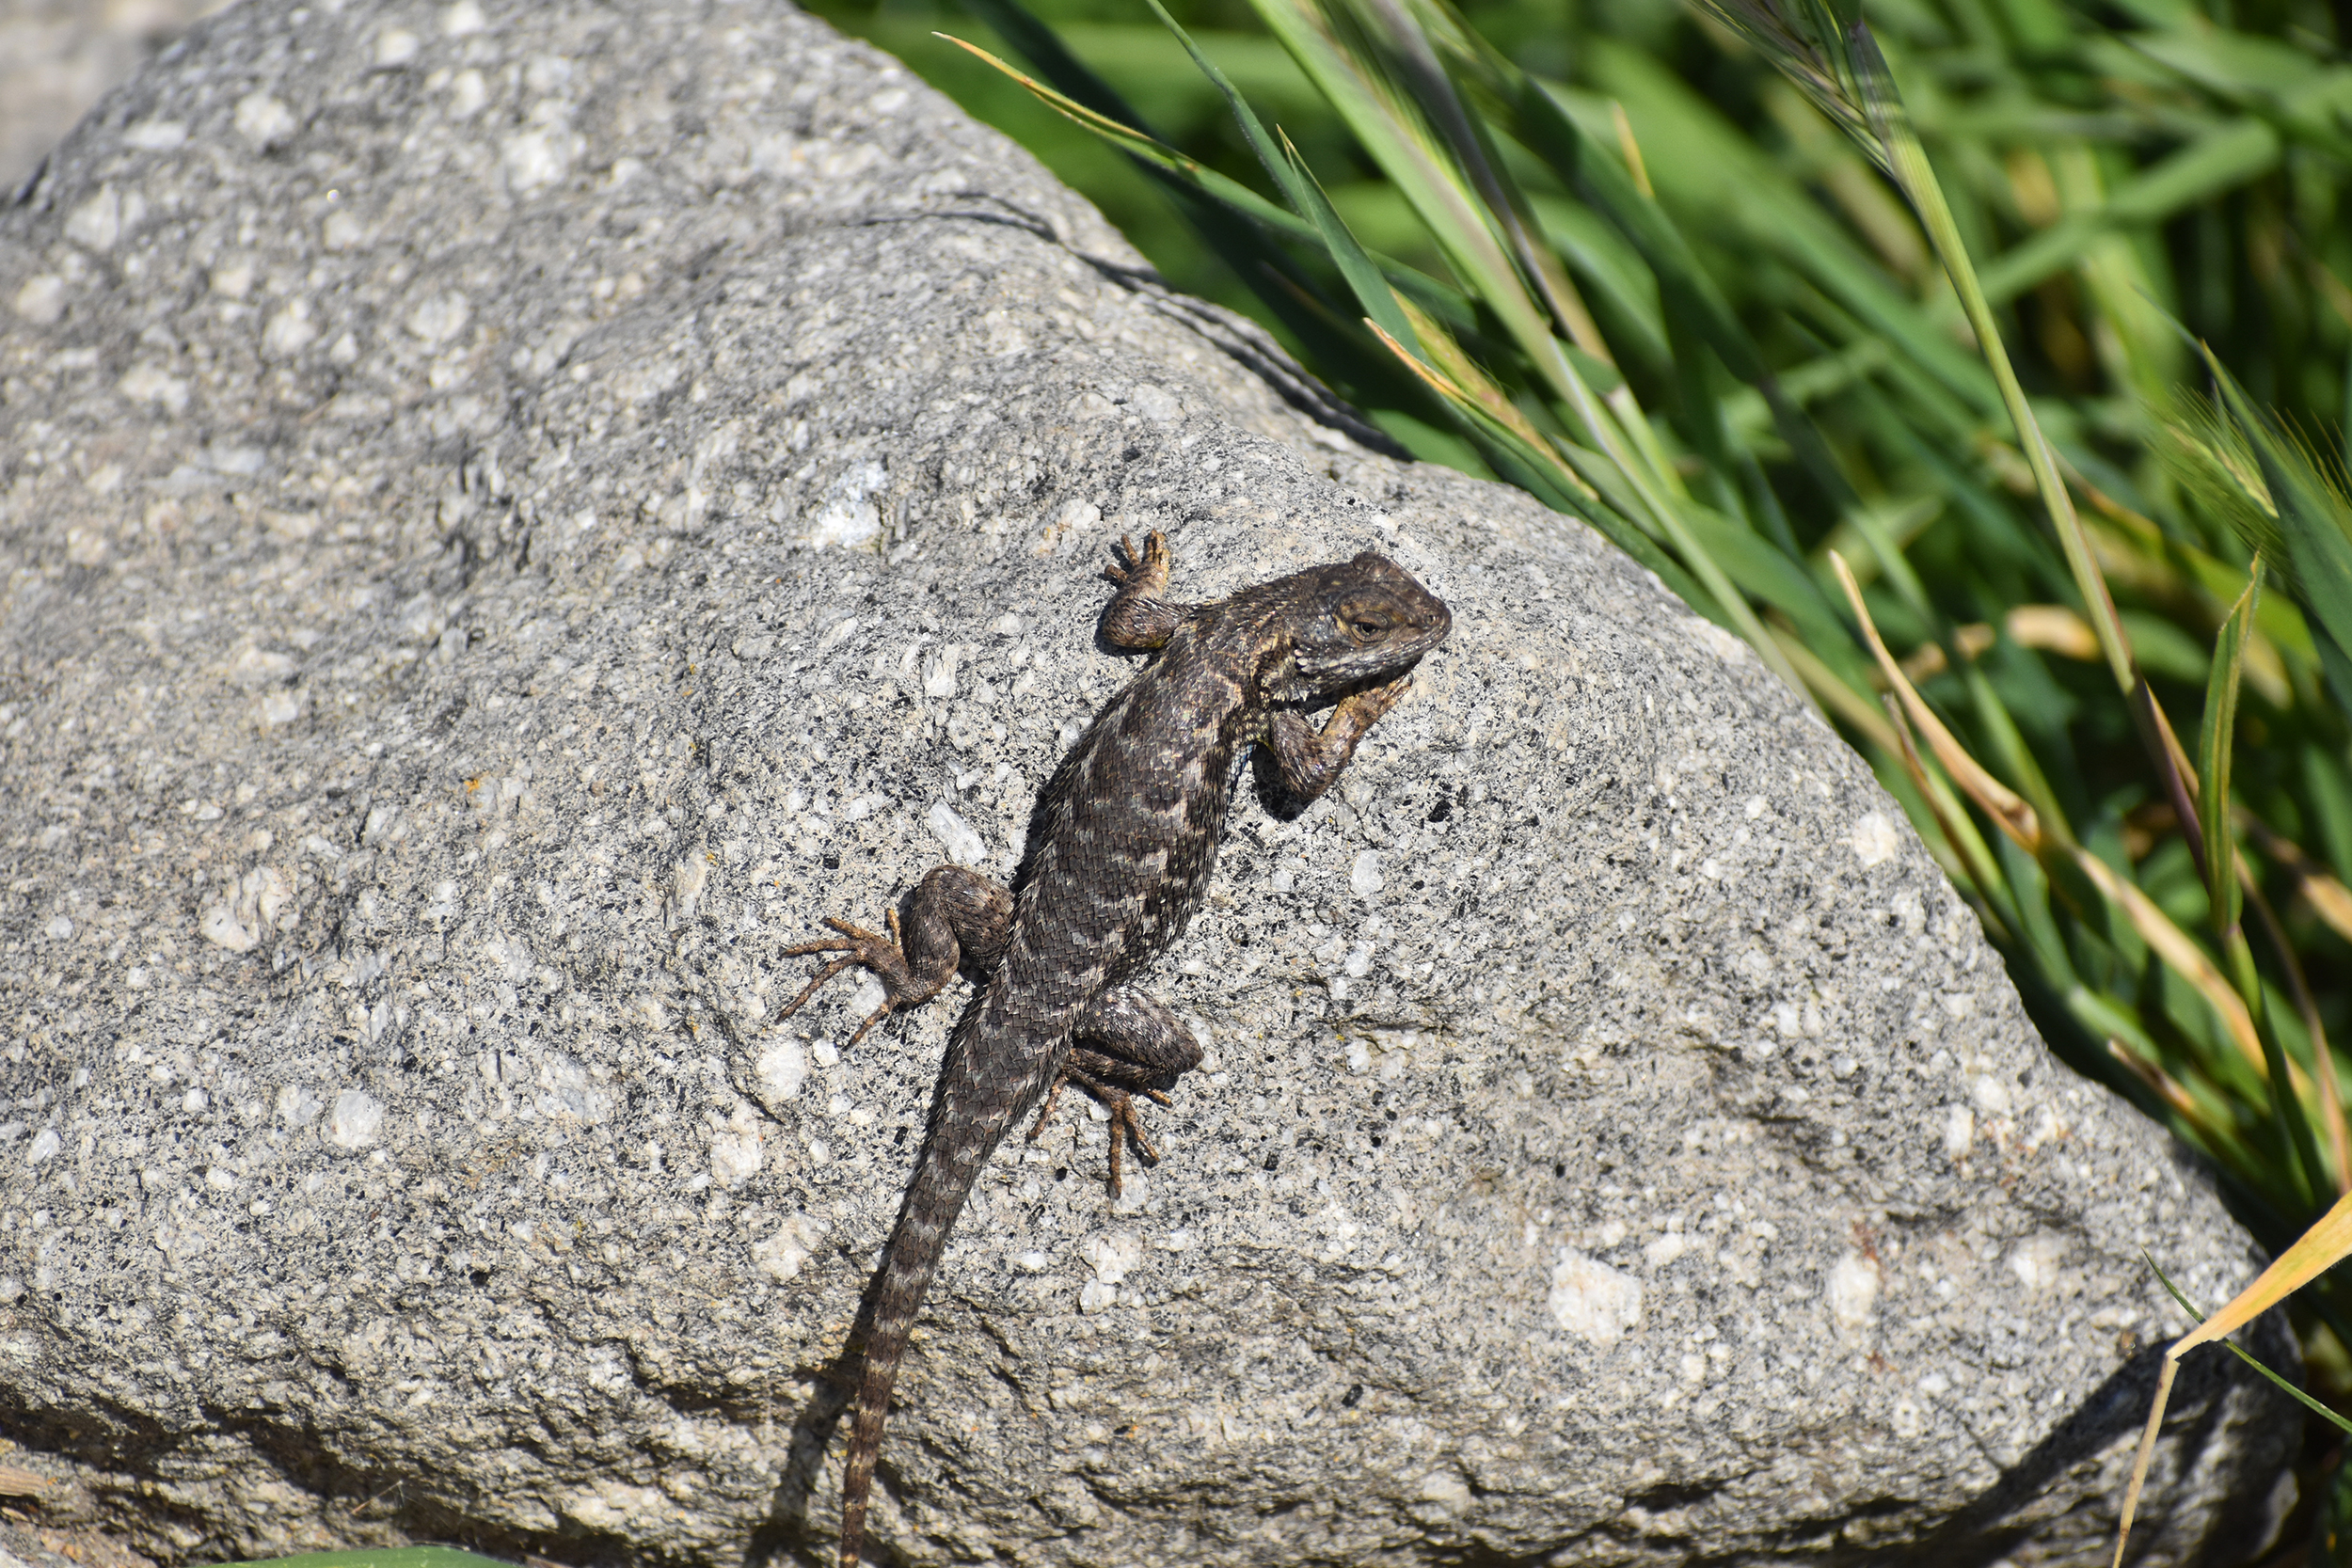 Western fence lizard on a rock